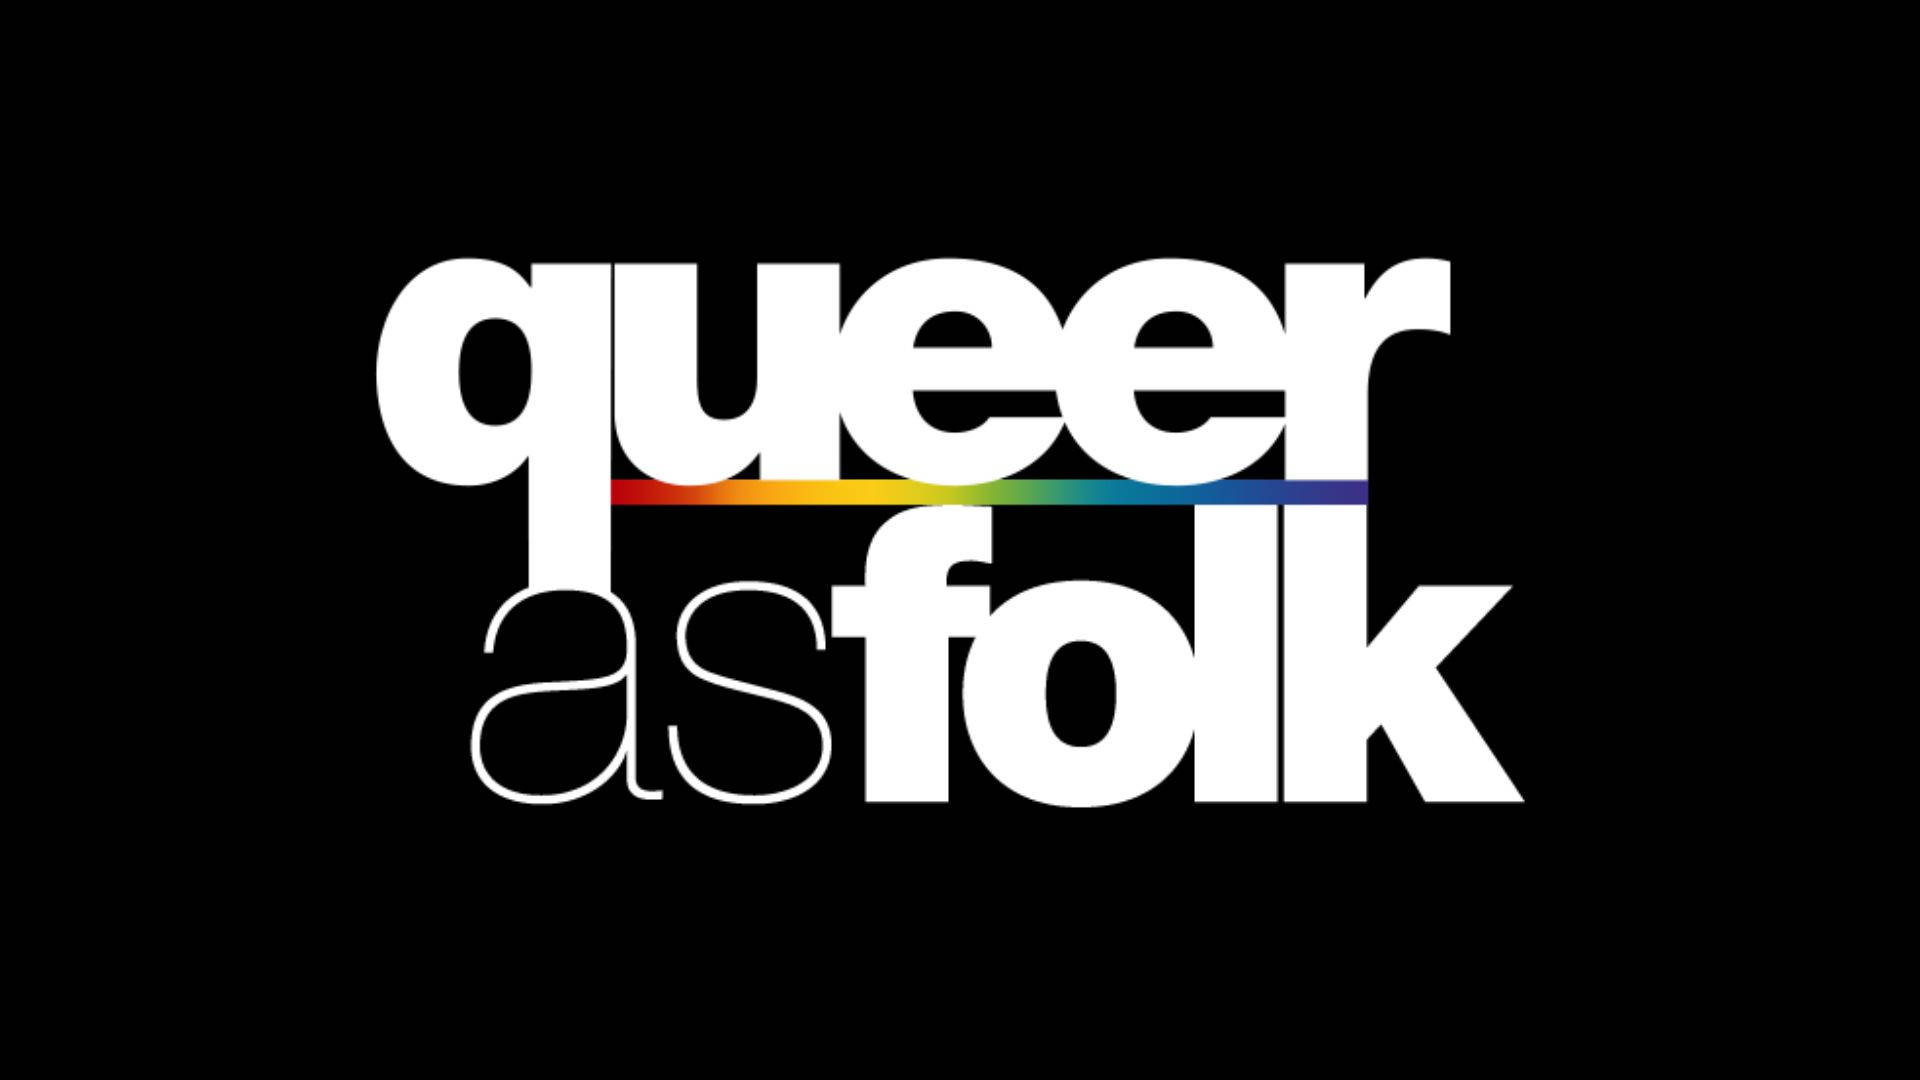 Fondos De Queer As Folk